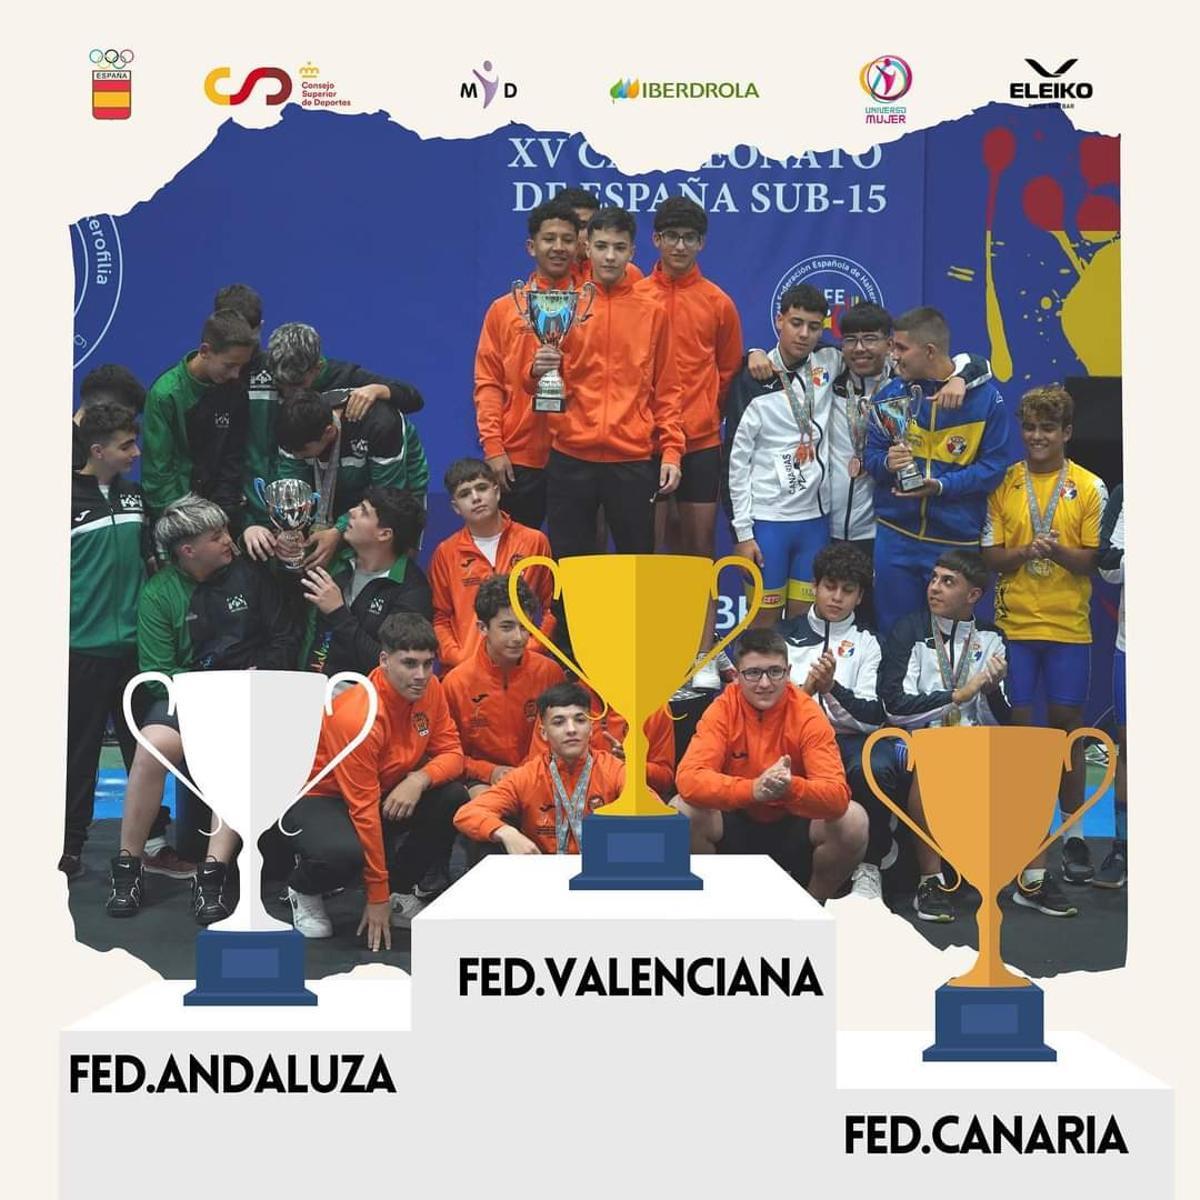 La Federación Valenciana fue la ganadora de la categoría masculina con 404,12 Puntos Élite.